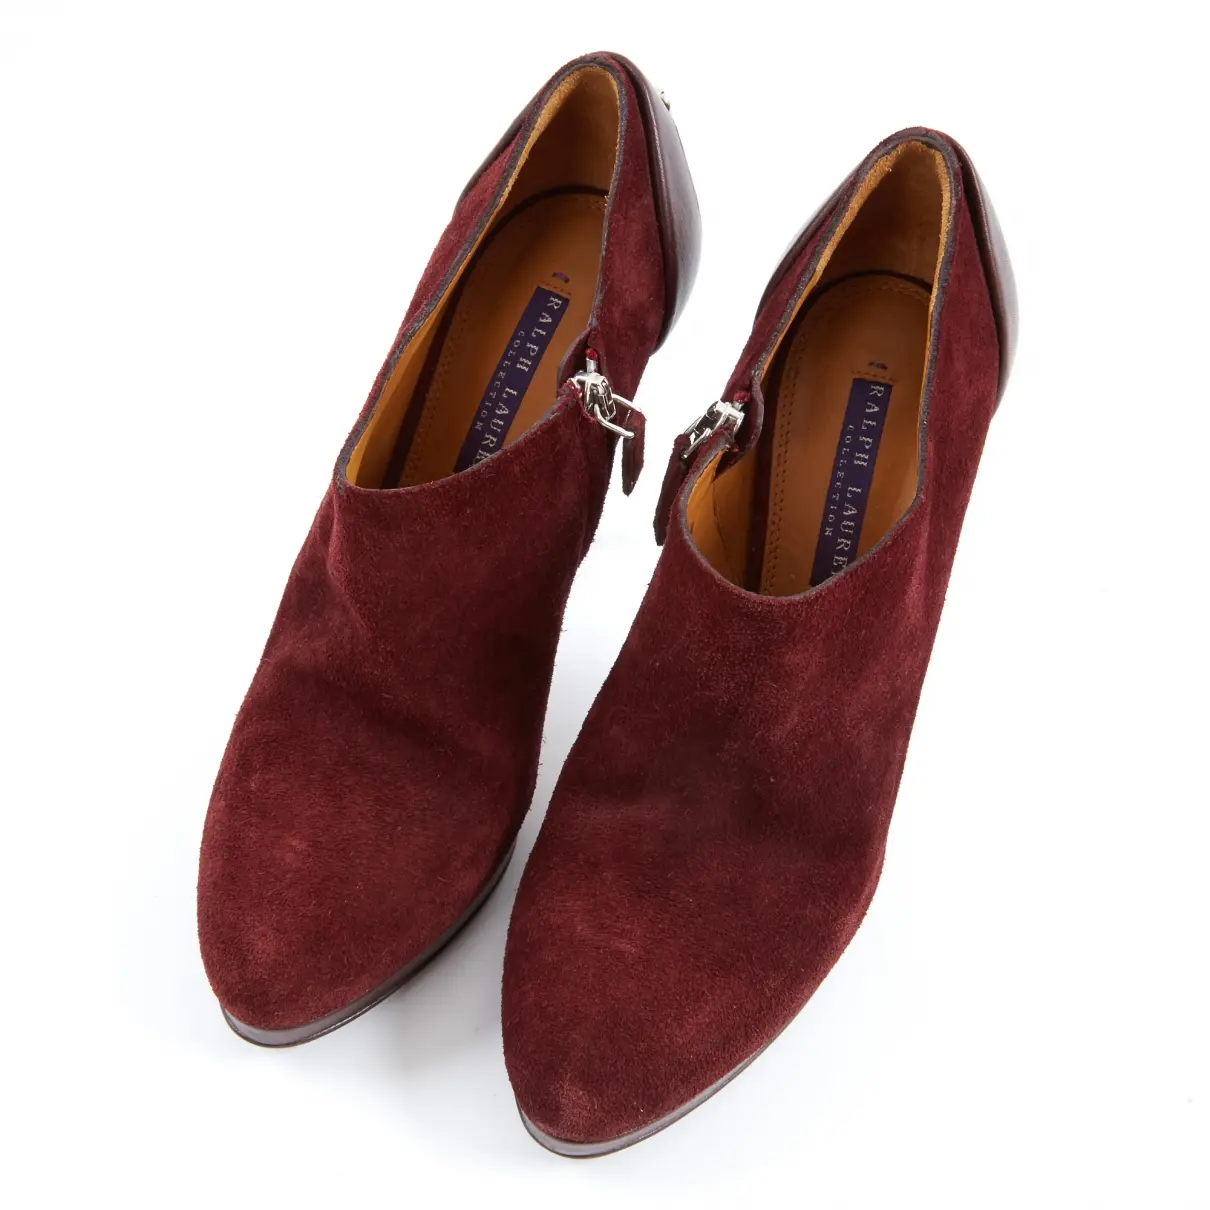 Buy Ralph Lauren Collection Boots online